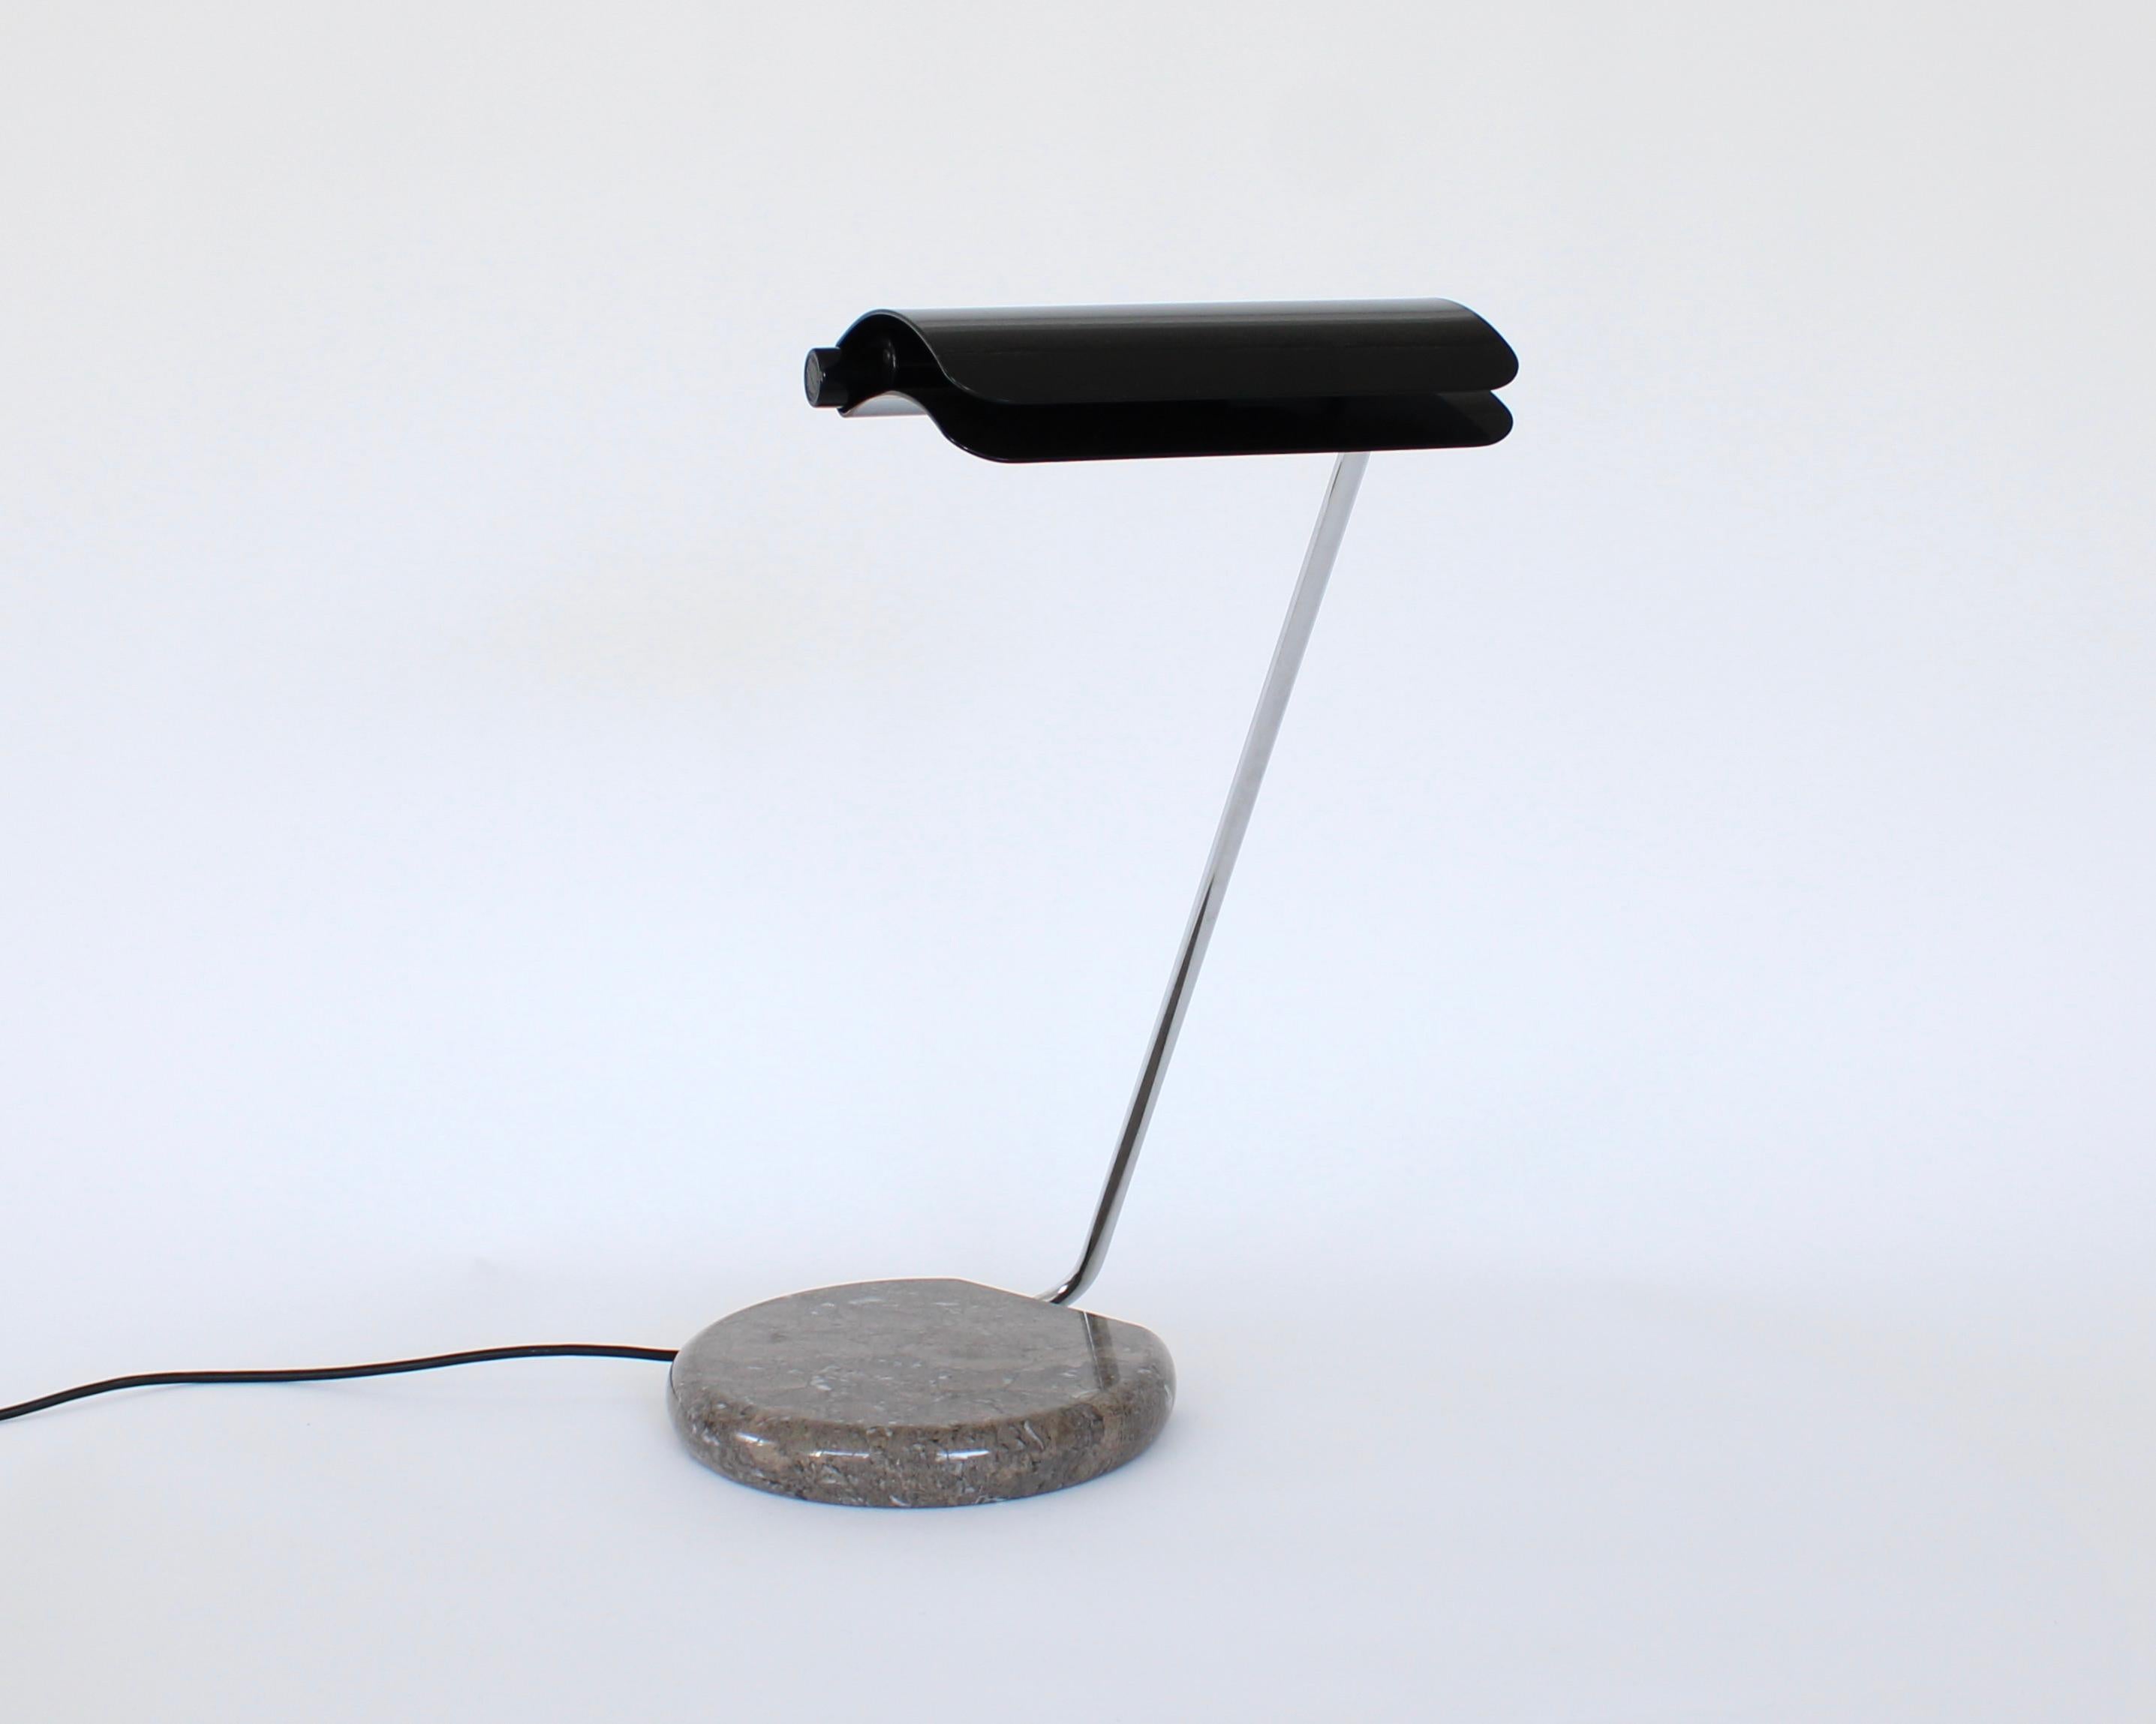 Ce modèle de lampe Tegola a été conçu par Bruno Gecchelin pour Skipper et Pollux. 
La base est en marbre brun Grigio avec un abat-jour en métal laqué noir. 
Tegola signifie tuile en italien, ce à quoi la teinte ressemble.
Cette lampe a été